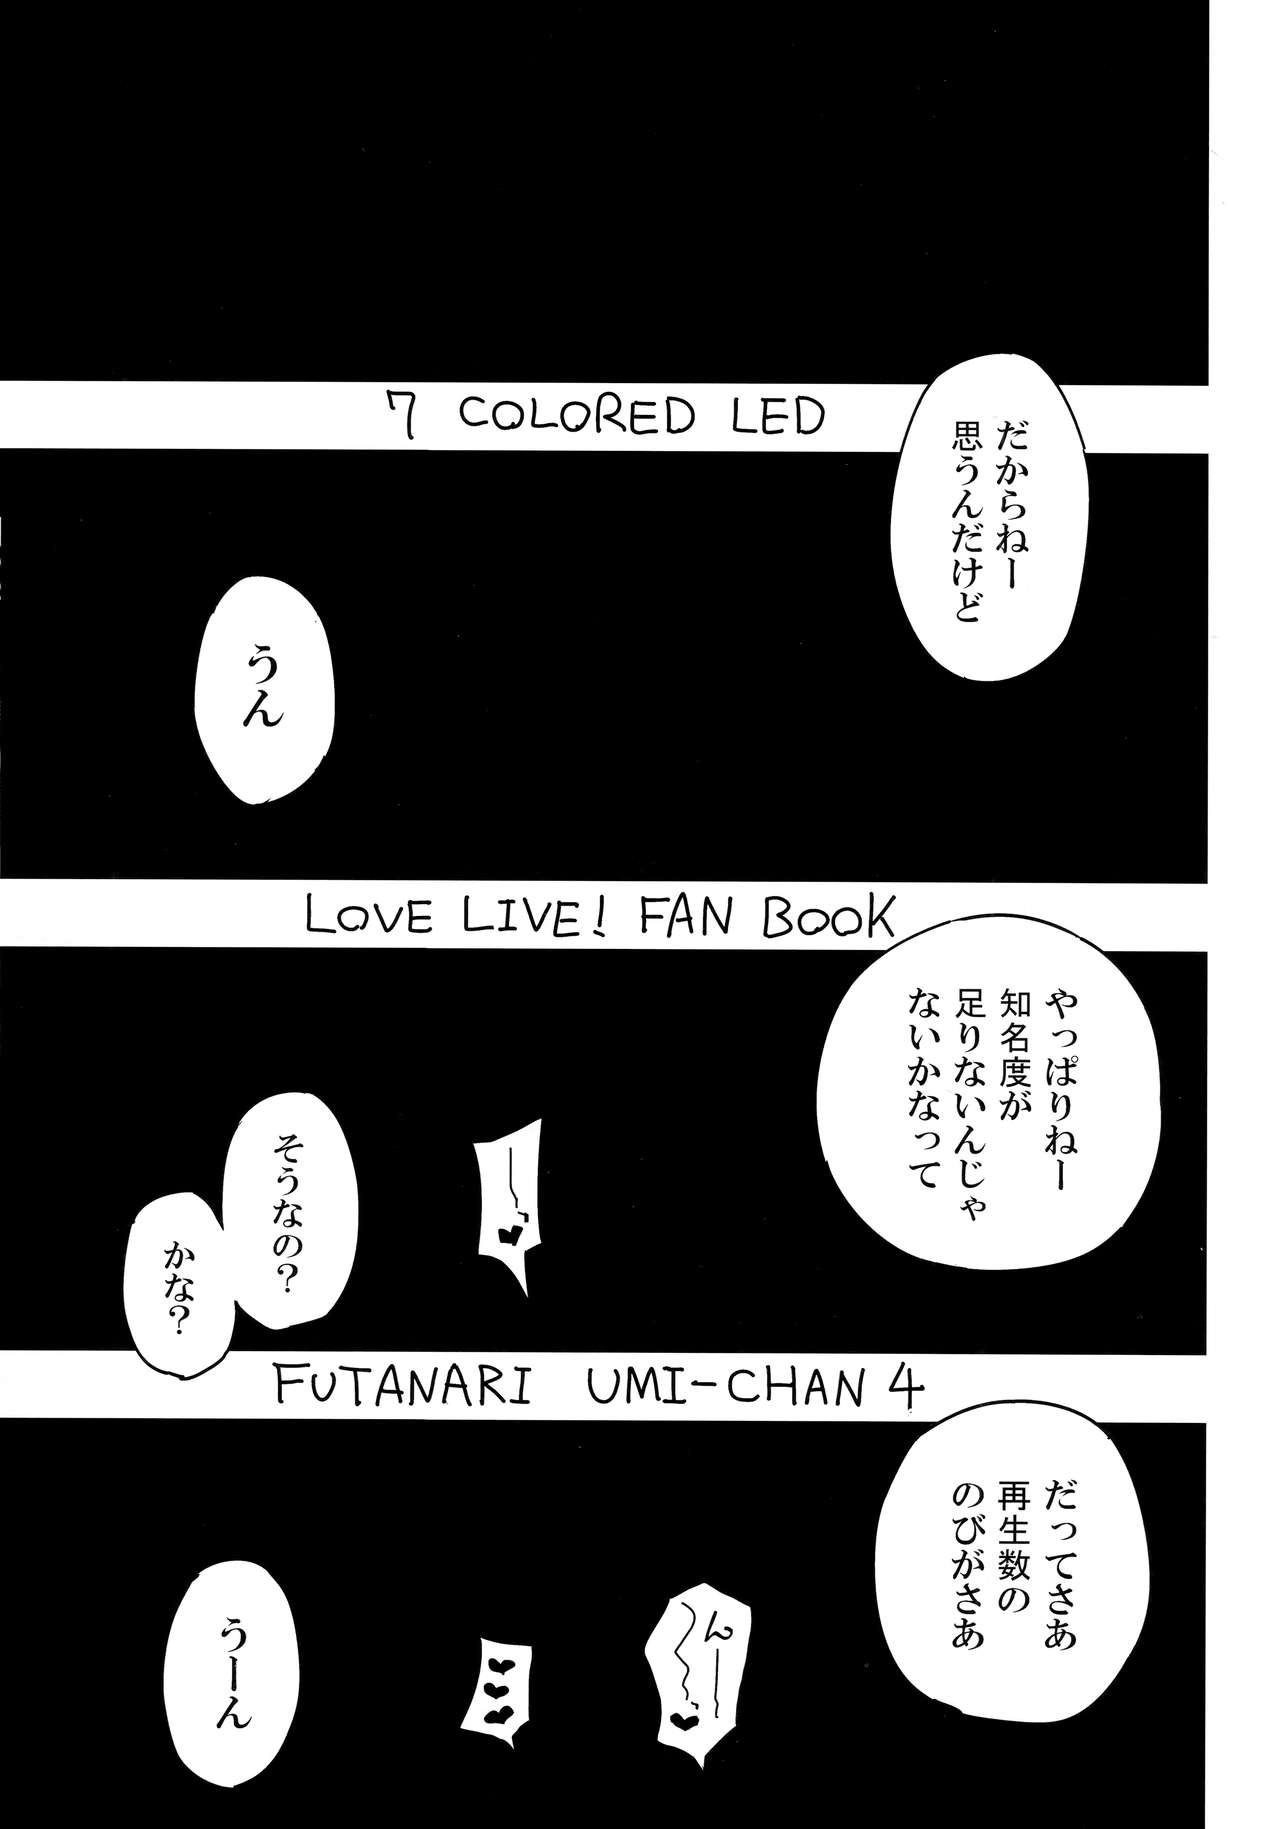 Web Cam Futanari Umi-chan 4 - Love live Exgf - Page 2